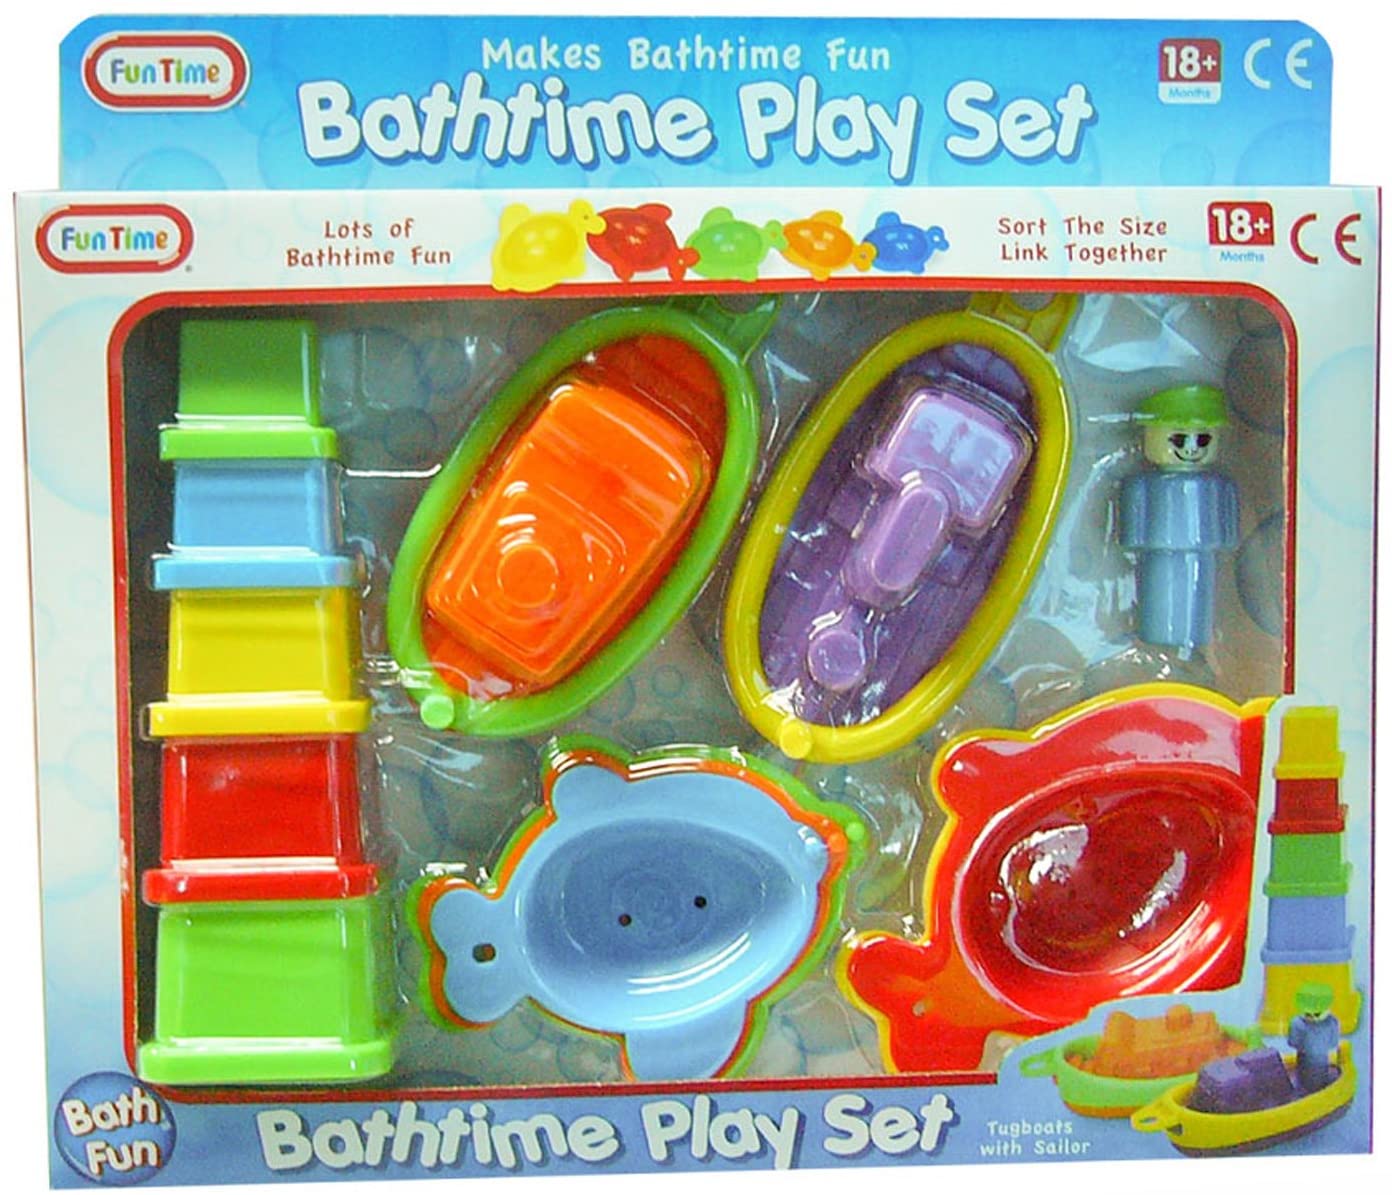 Bathtime Play Set